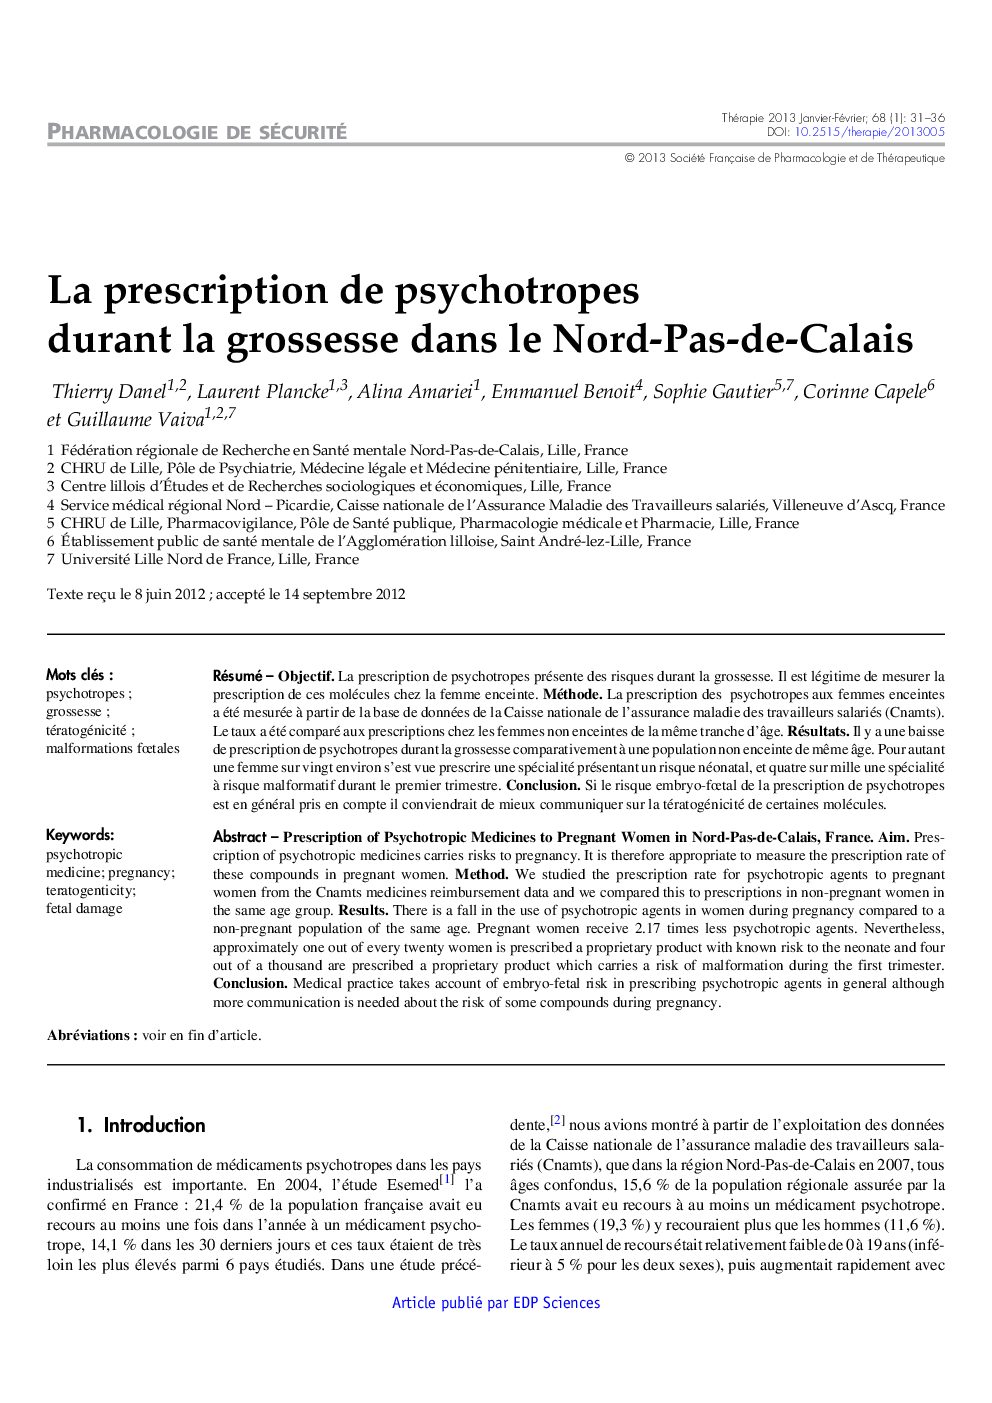 La prescription de psychotropes durant la grossesse dans le Nord-Pas-de-Calais